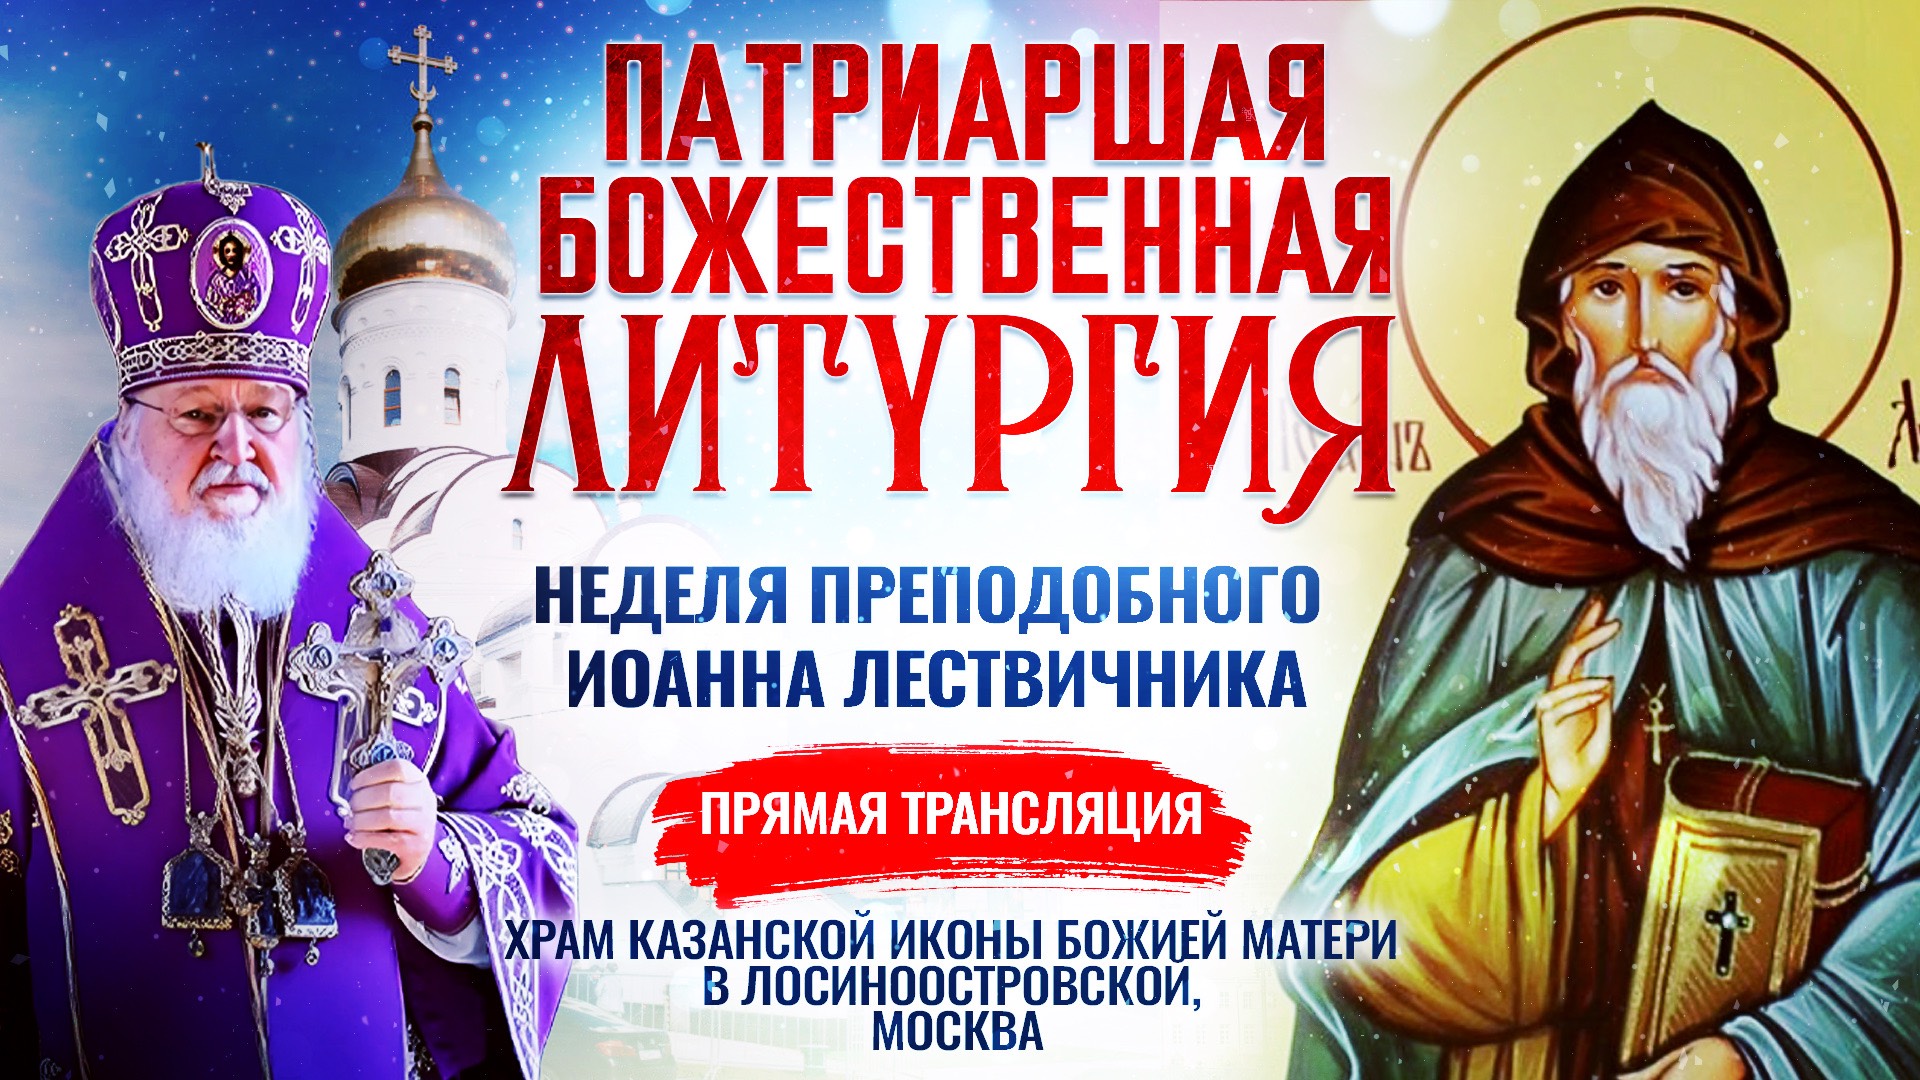 ВЕЛИКОЕ ОСВЯЩЕНИЕ ХРАМА КАЗАНСКОЙ ИКОНЫ БОЖИЕЙ МАТЕРИ В ЛОСИНООСТРОВСКОЙ И БОЖЕСТВЕННАЯ ЛИТУРГИЯ